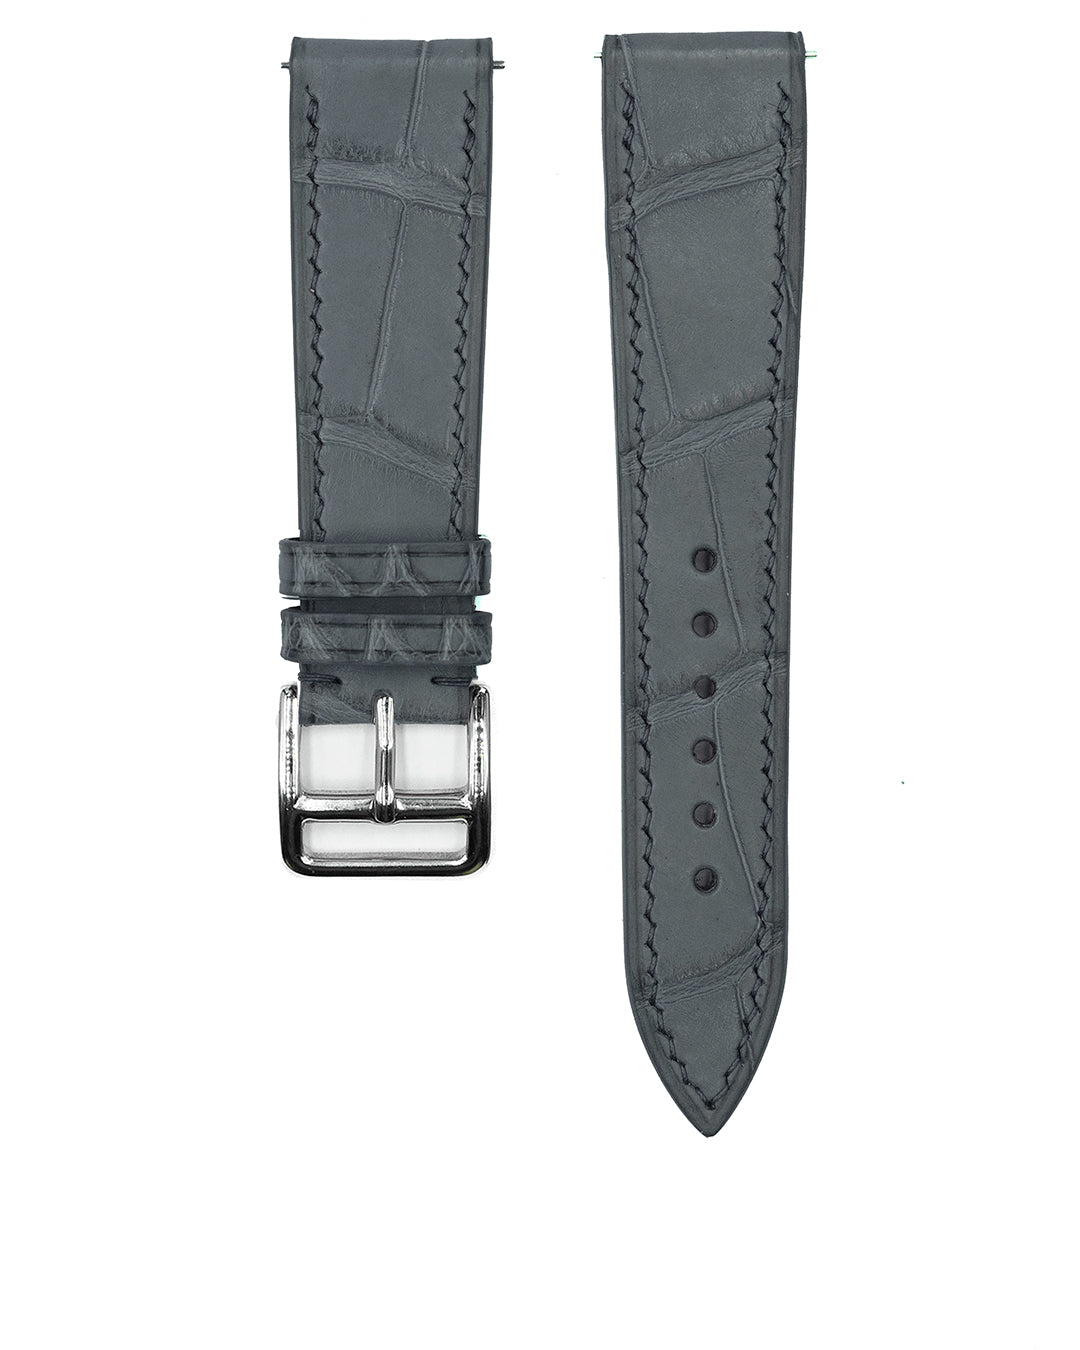 (19mm) Alligator Leather - Serpentine Grey, Short